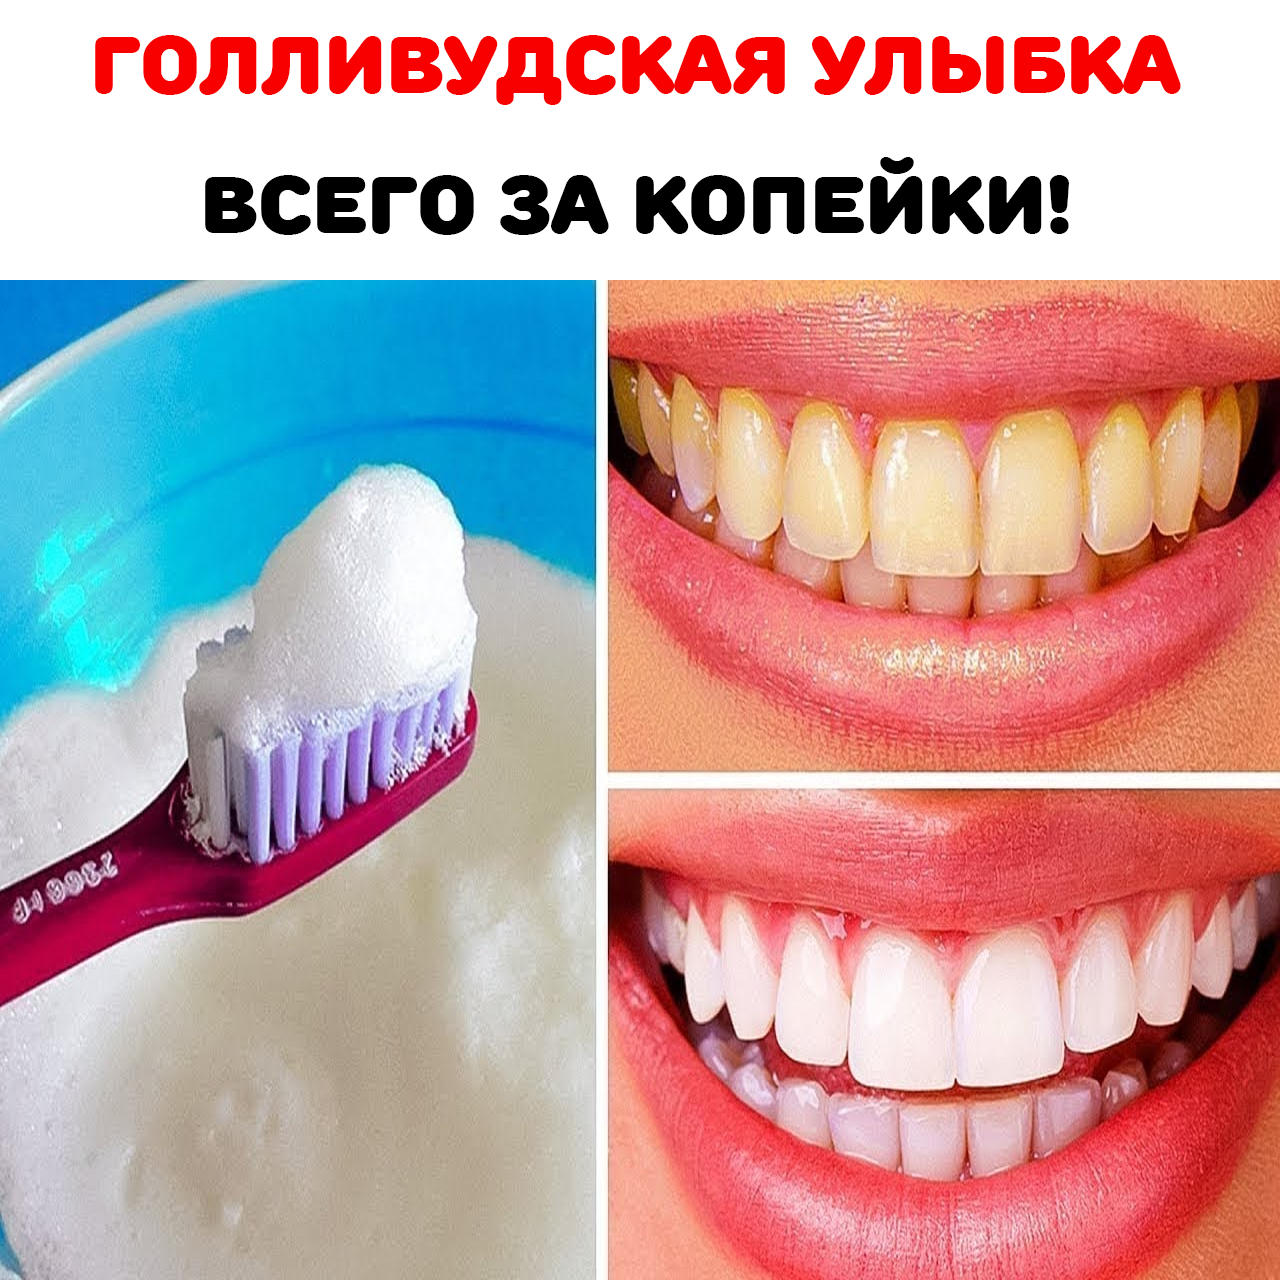 Рецепт отбеливания зубов. Смесь отбеливающая зубы. Отбеливание зубов в домашних условиях без вреда для эмали и зубов. Отбелить зубы в домашних условиях без вреда. Отбеливание зубов содой.